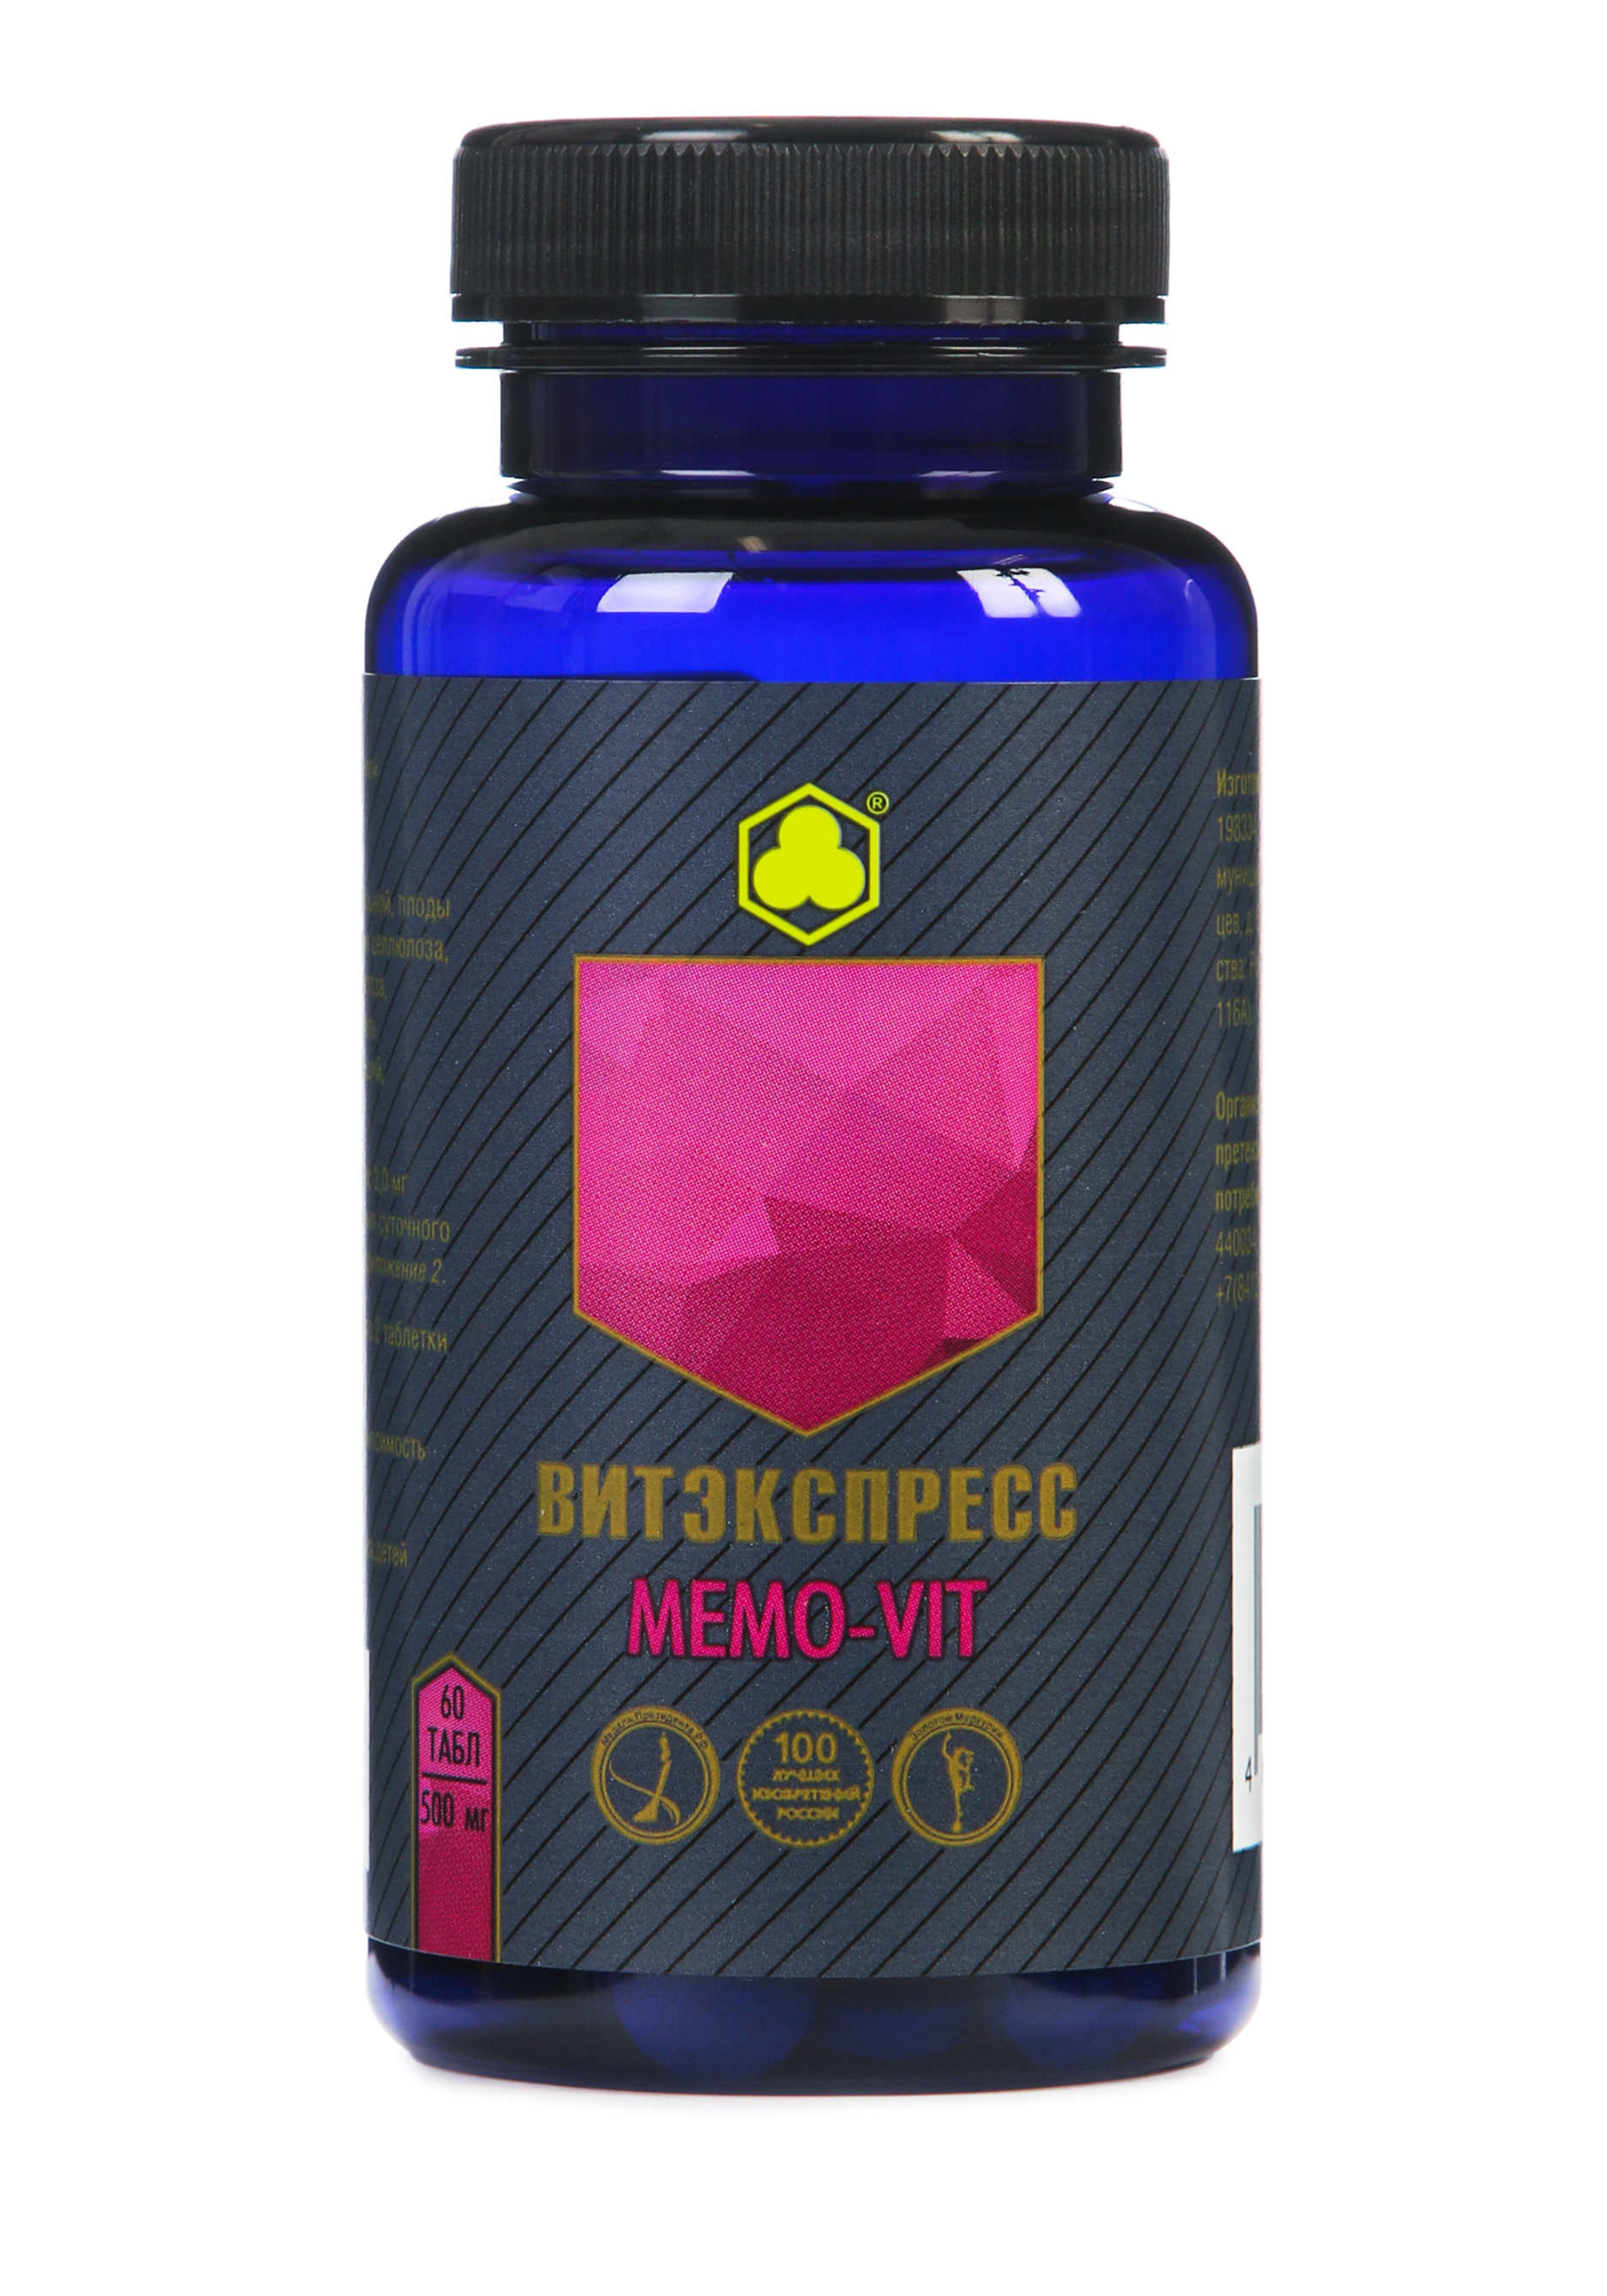 Органик-комплекс Memo-vit витаминный комплекс